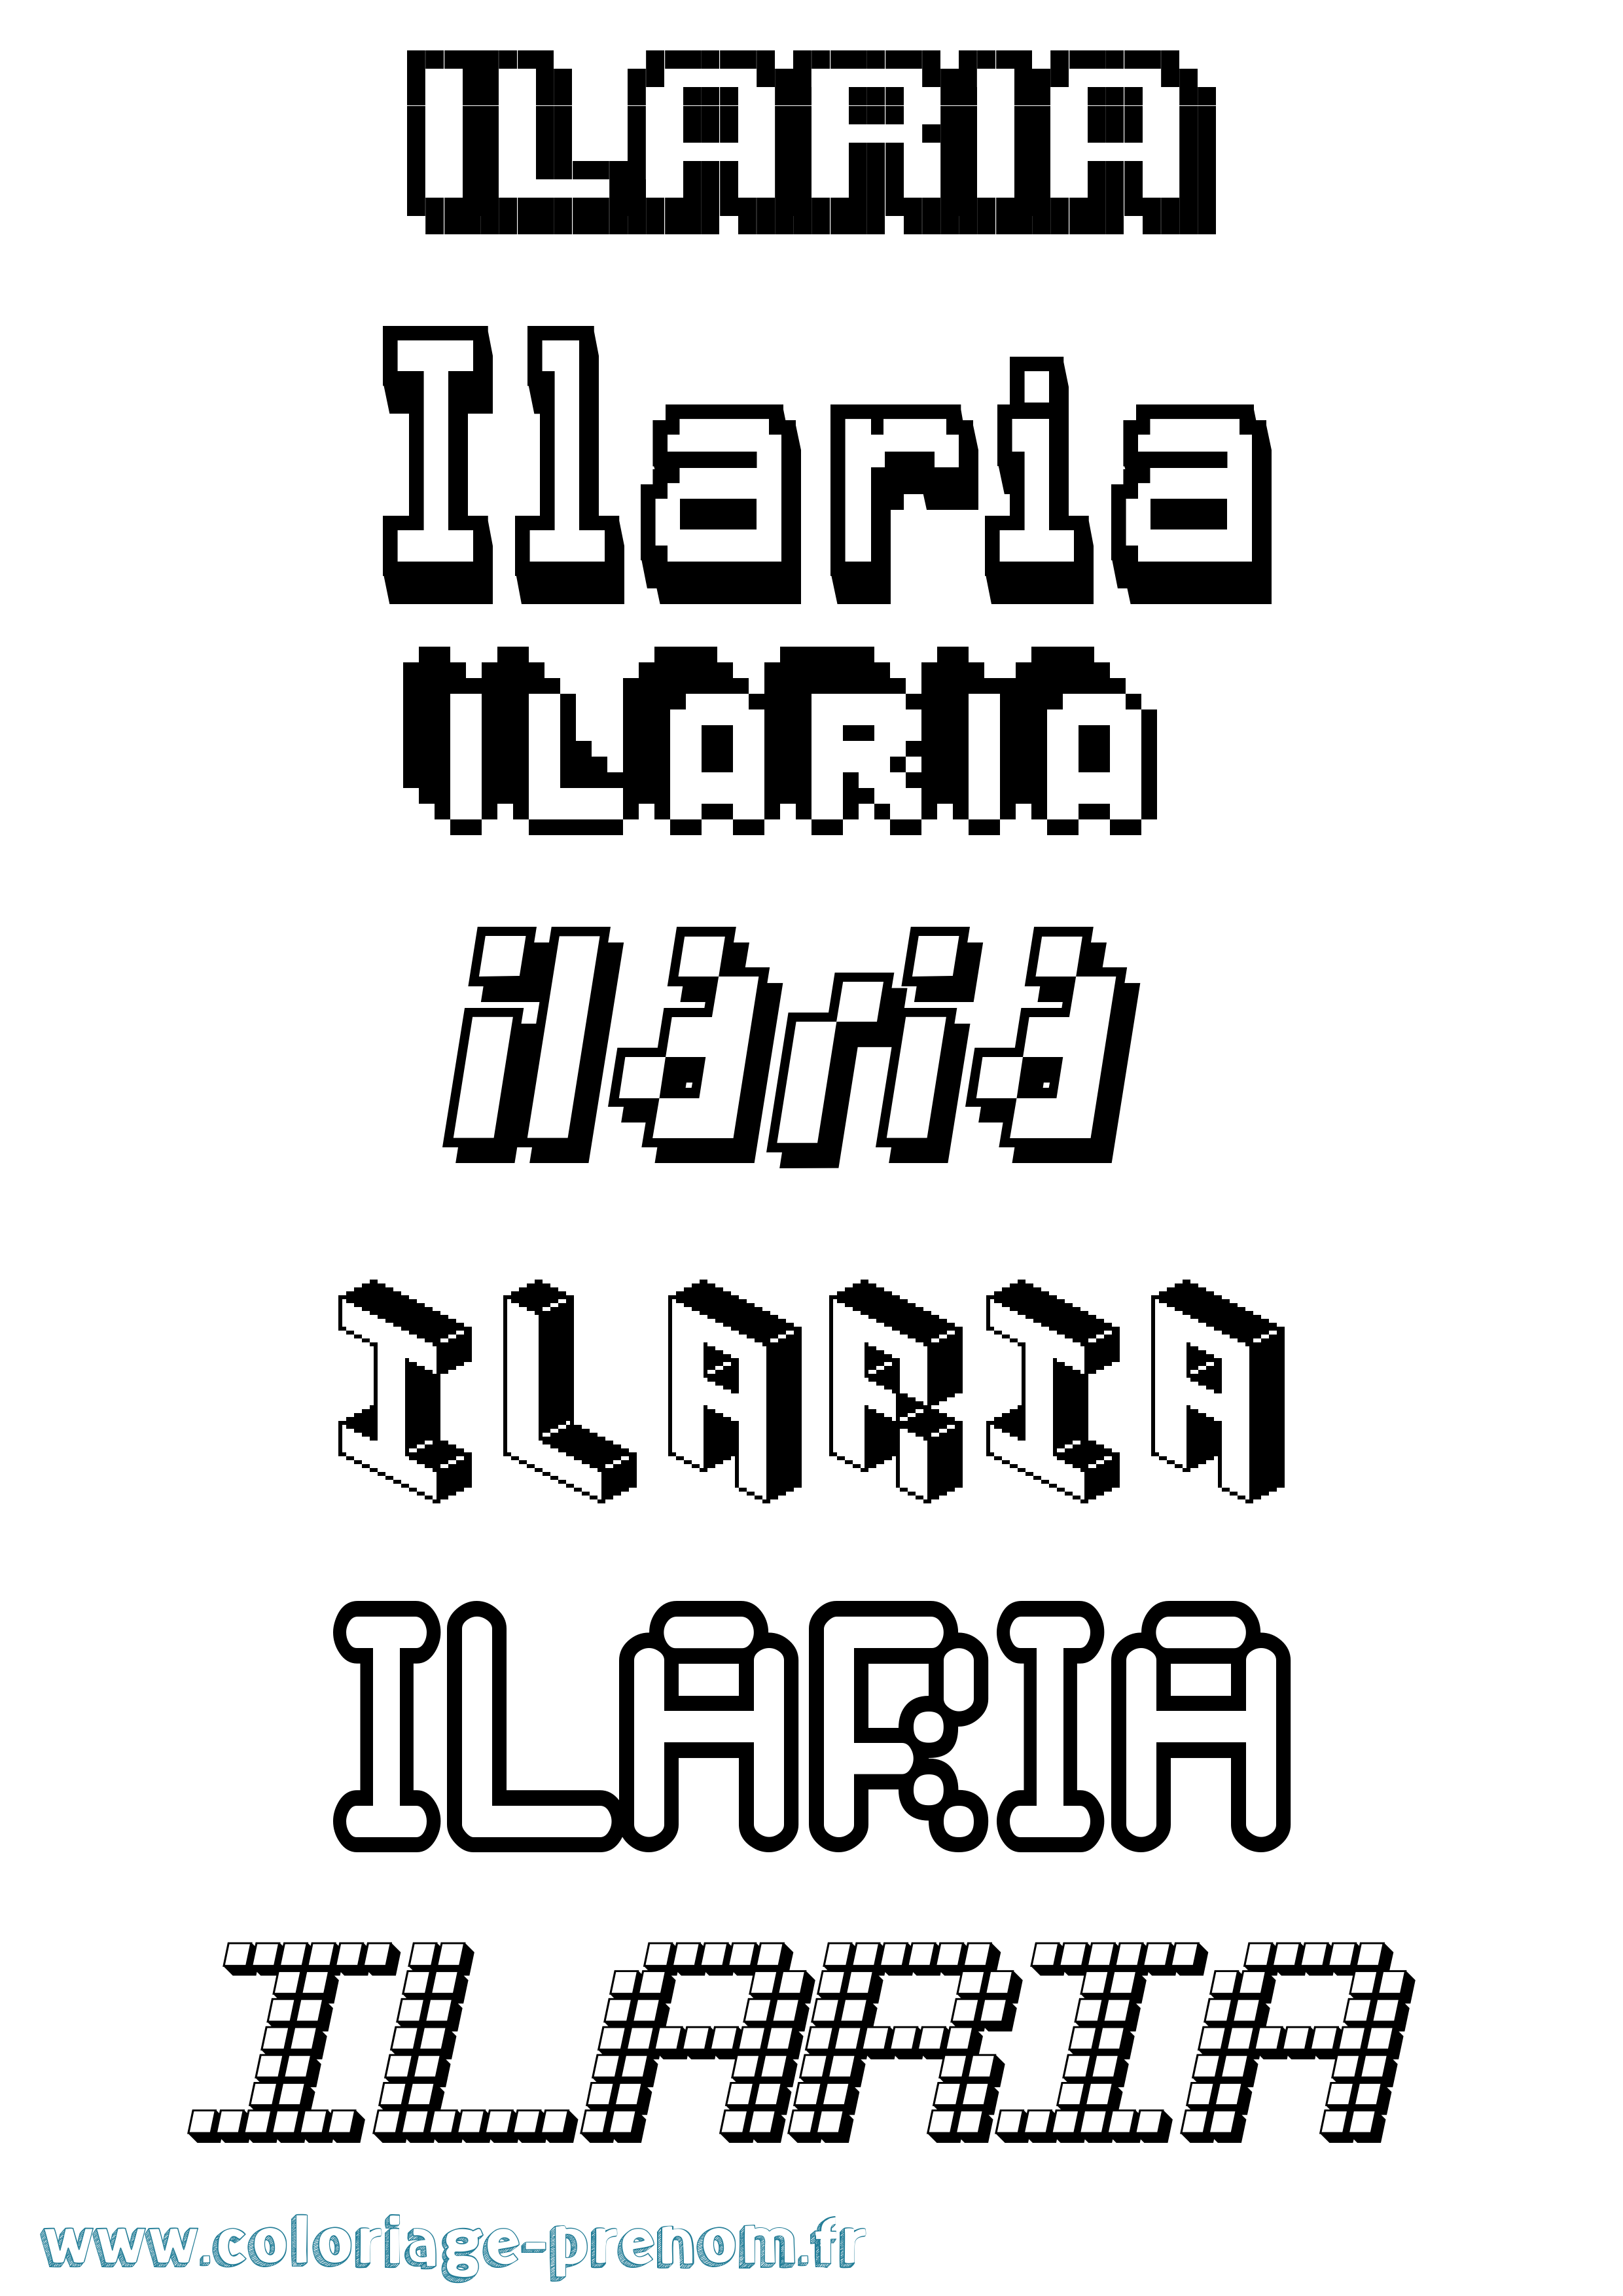 Coloriage prénom Ilaria Pixel